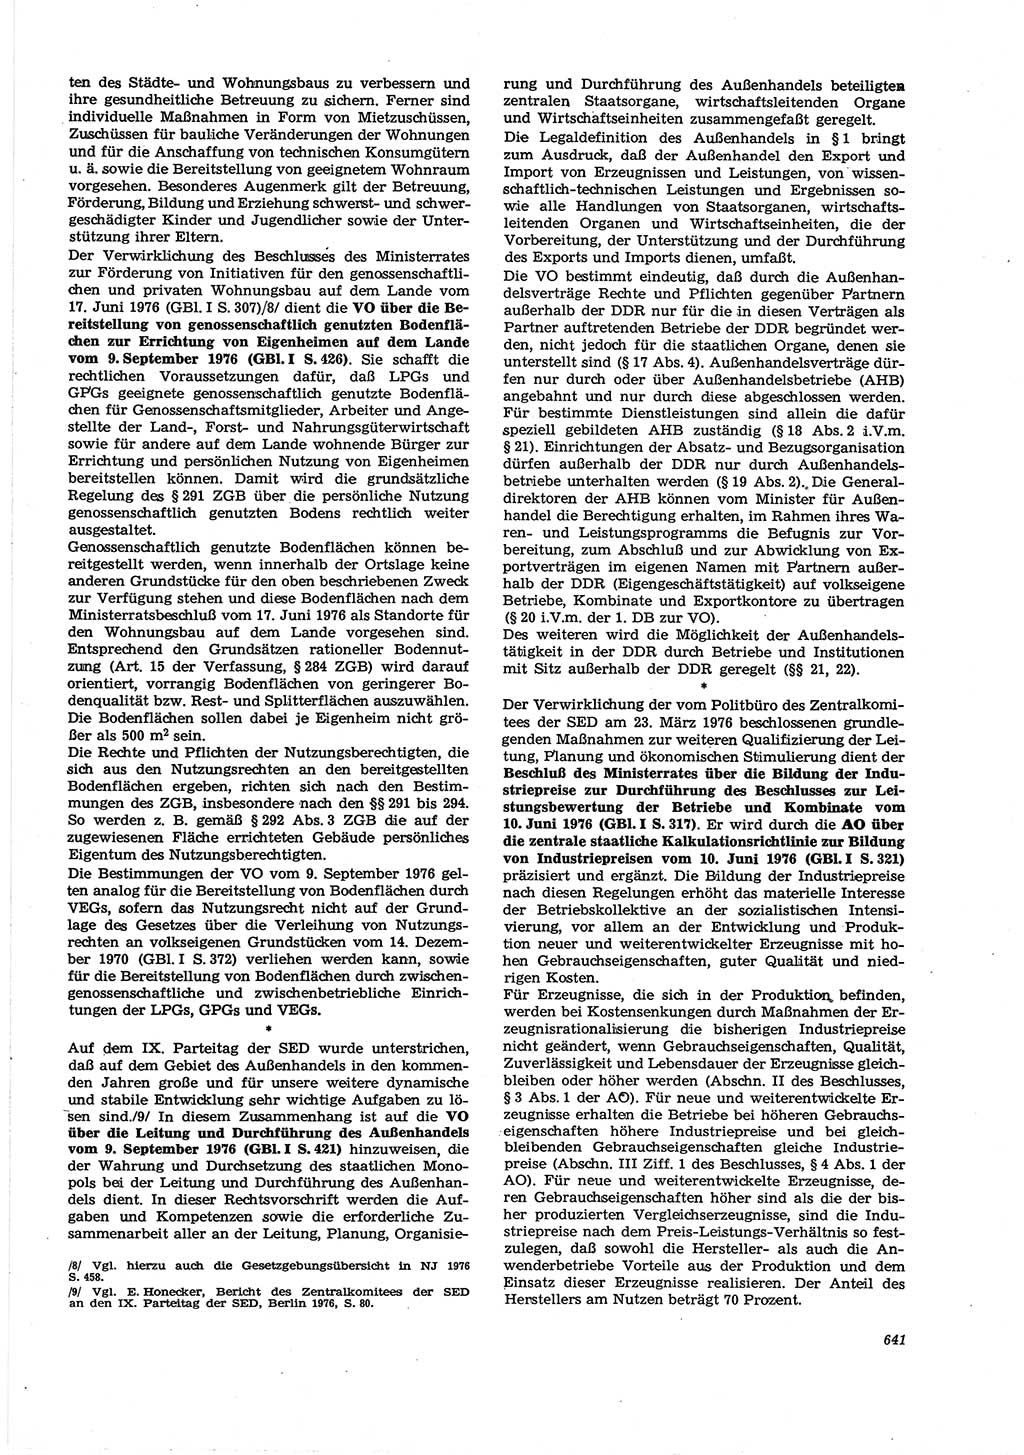 Neue Justiz (NJ), Zeitschrift für Recht und Rechtswissenschaft [Deutsche Demokratische Republik (DDR)], 30. Jahrgang 1976, Seite 641 (NJ DDR 1976, S. 641)